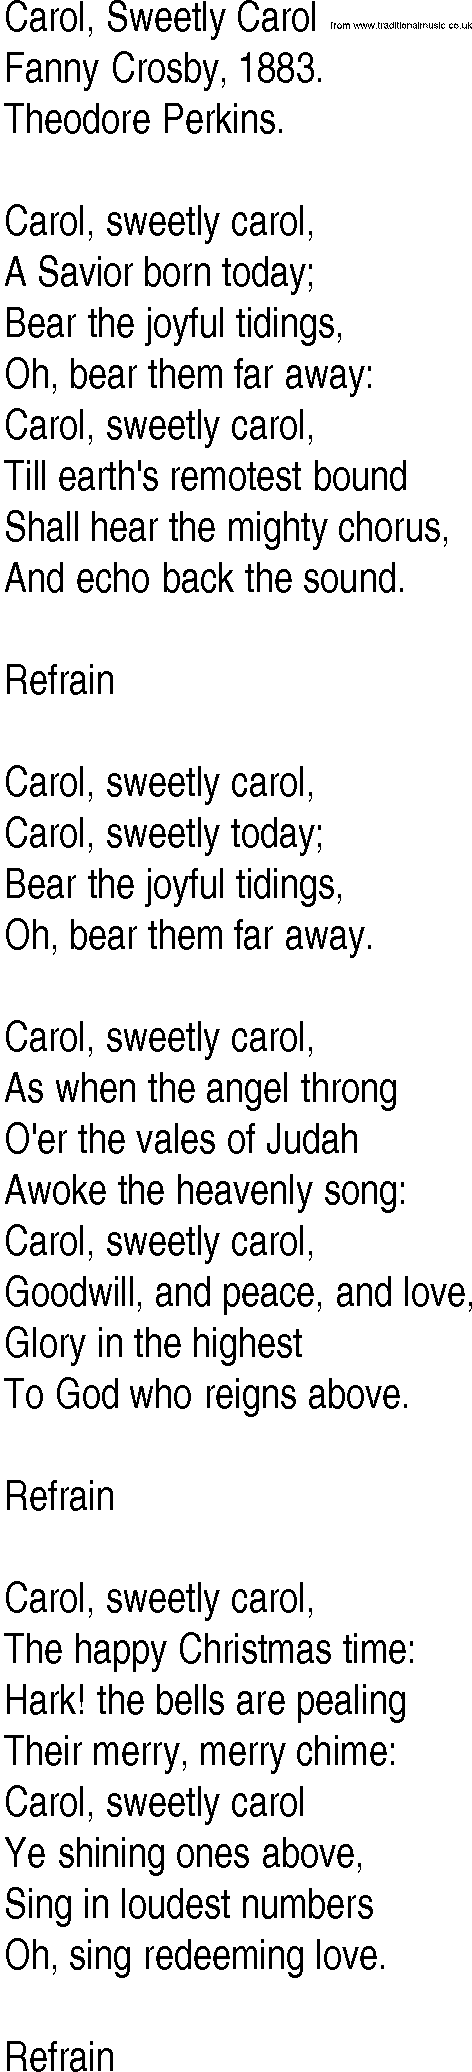 Hymn and Gospel Song: Carol, Sweetly Carol by Fanny Crosby lyrics